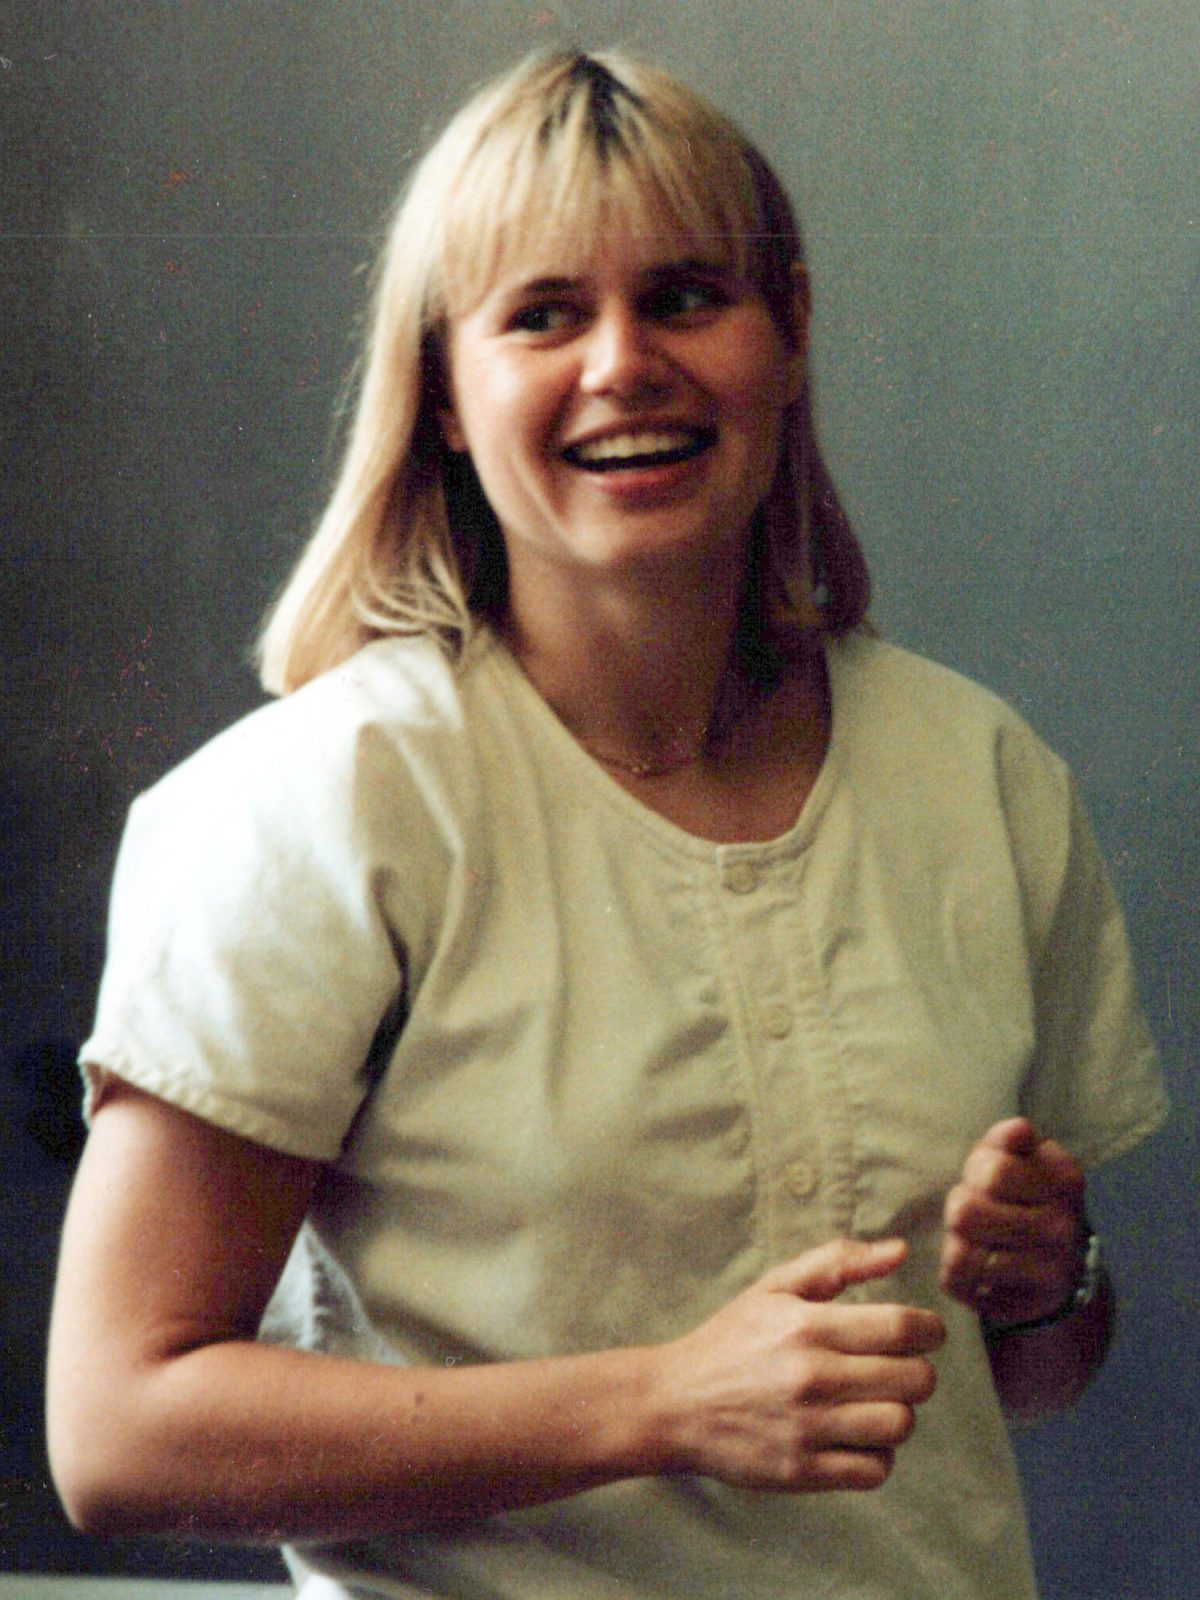 Ung blond tjej med stort leende, klädd i en blus i 1980-talsstil.